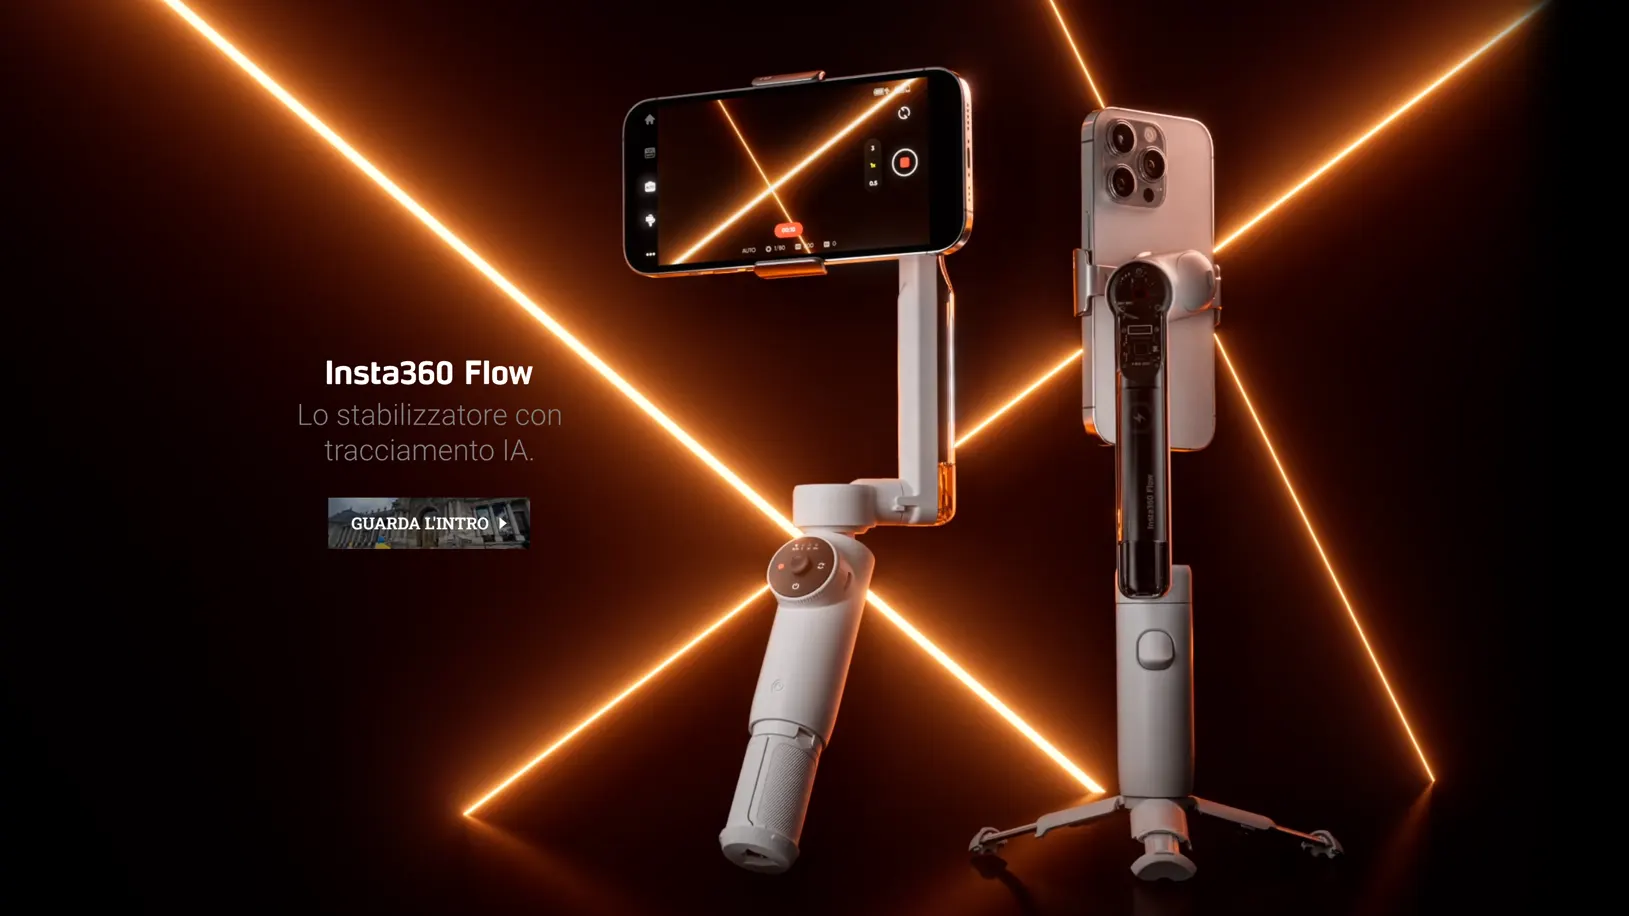 Insta360 Flow il gimbal per smartphone potenziato dall'IA